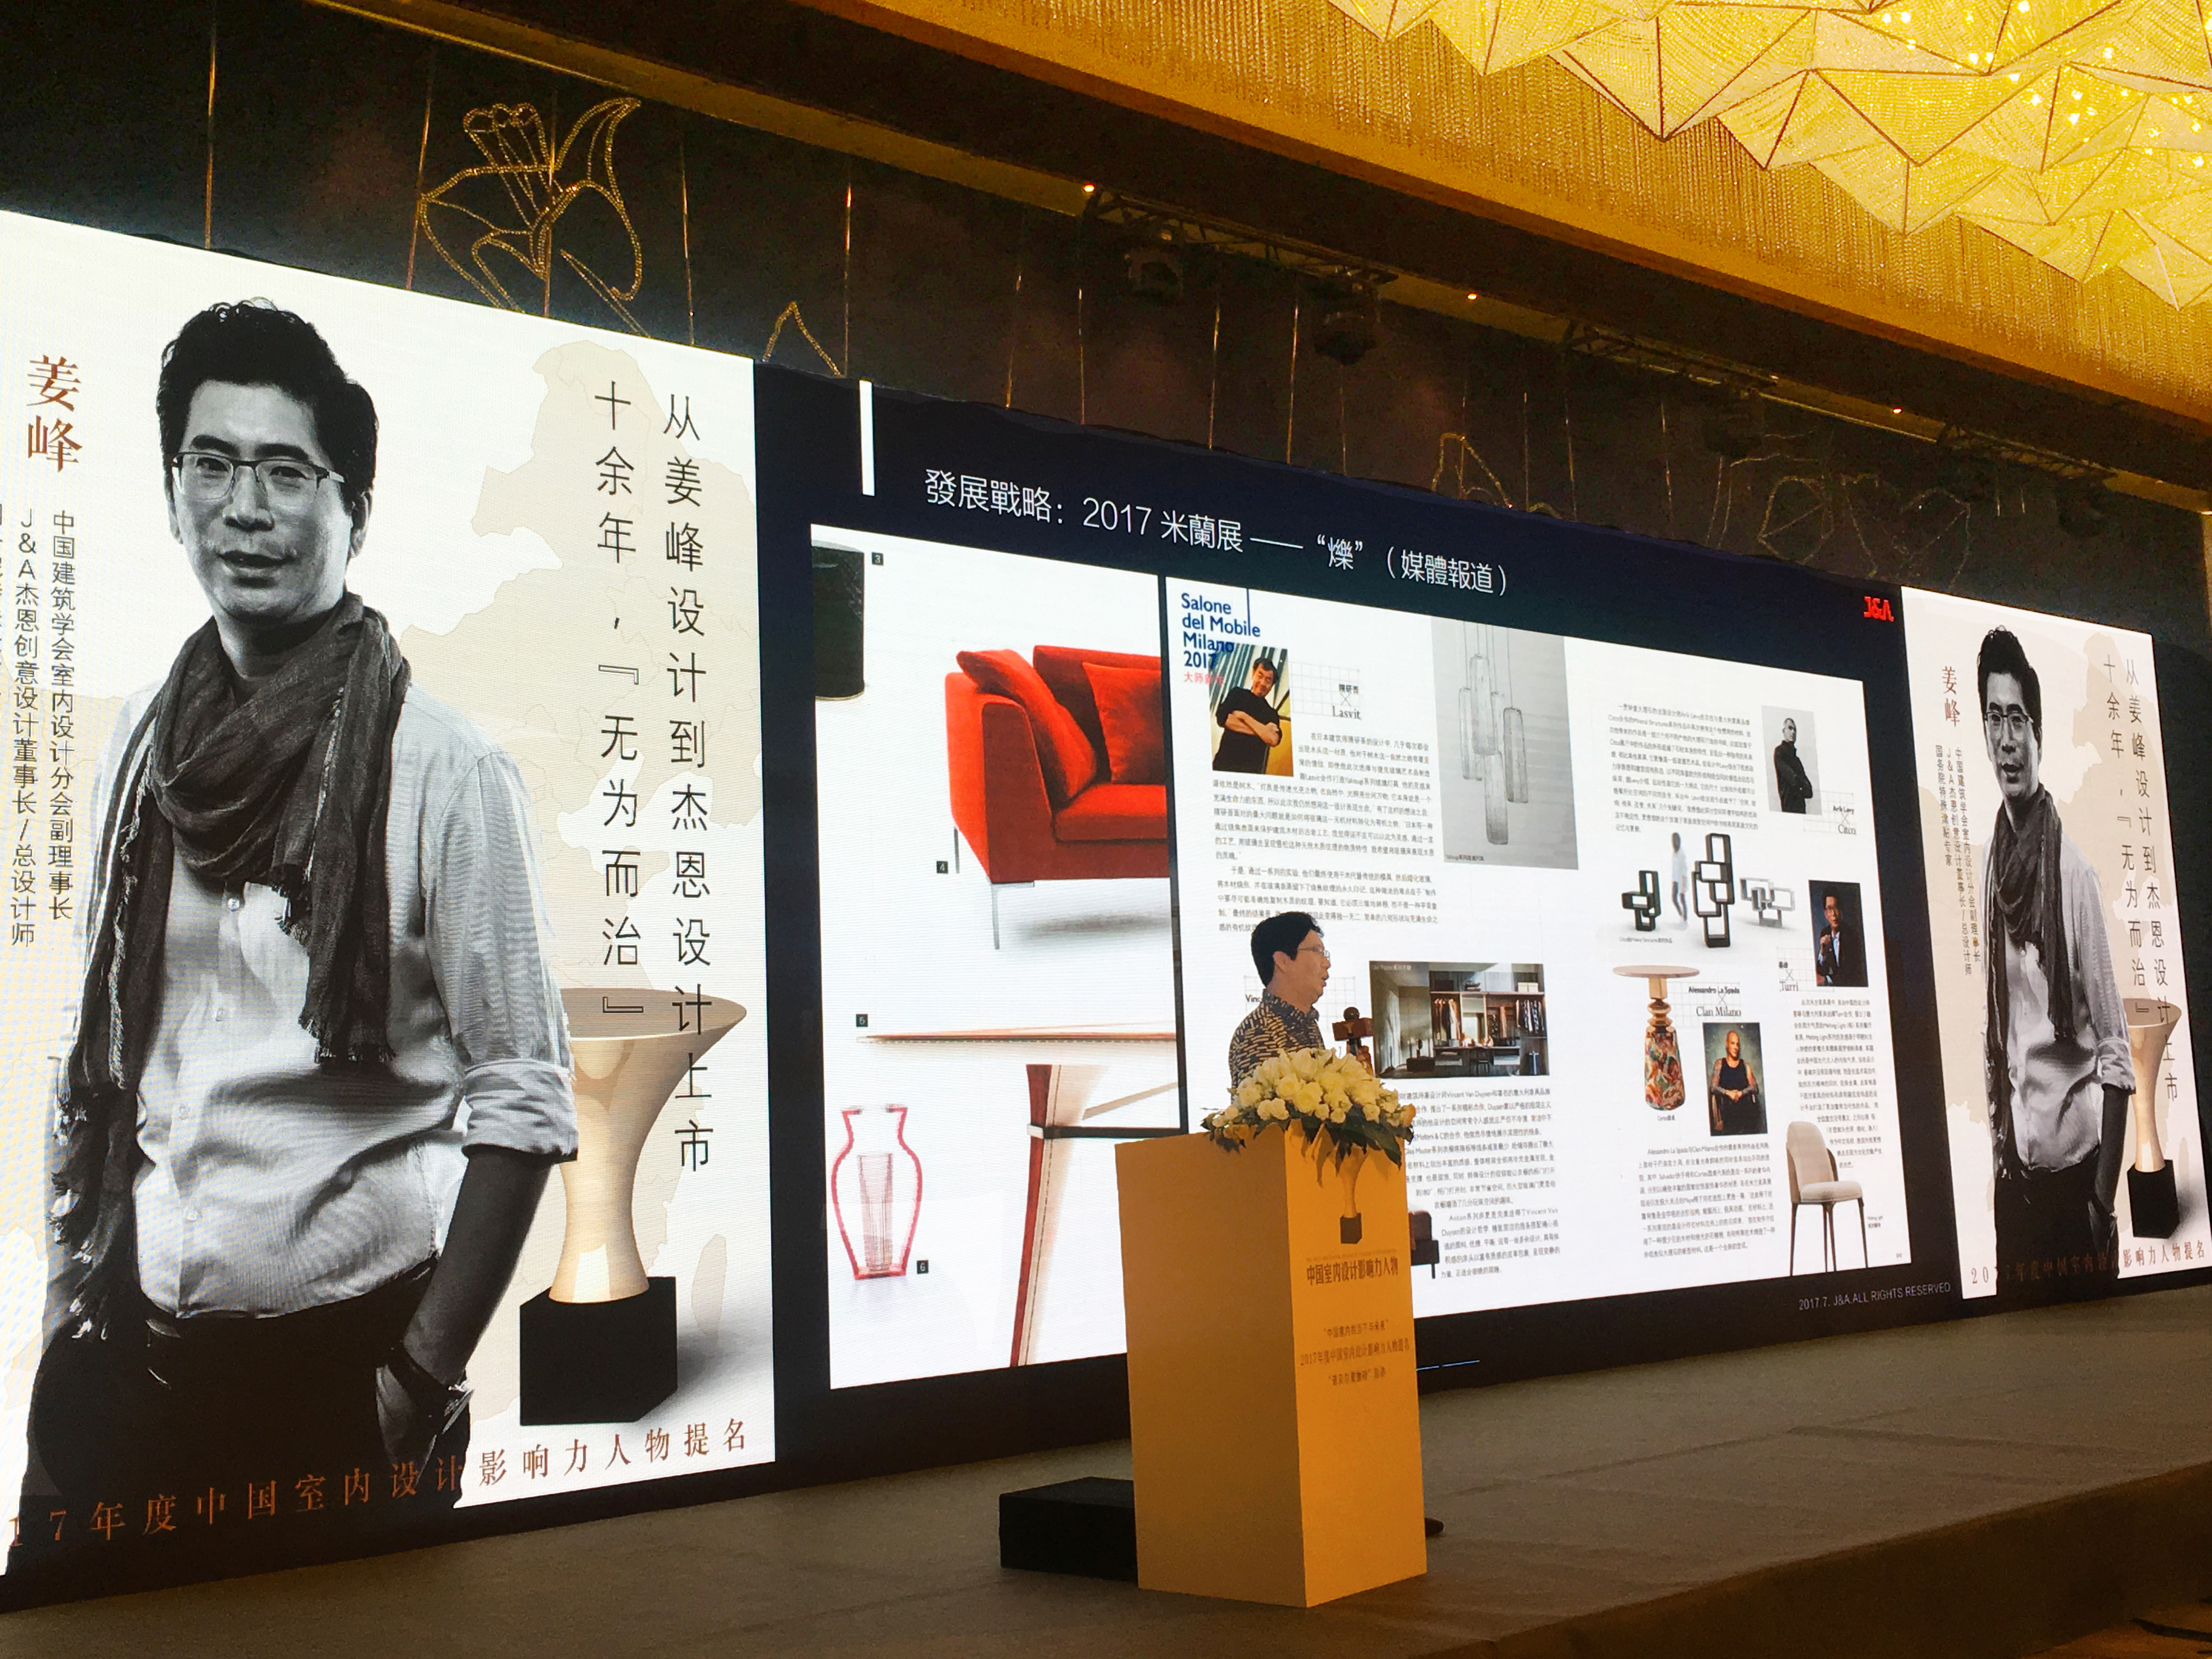 J&A杰恩设计董事长/总设计师姜峰先生作为“2017中国室内设计影响力人物” 提名人作演讲